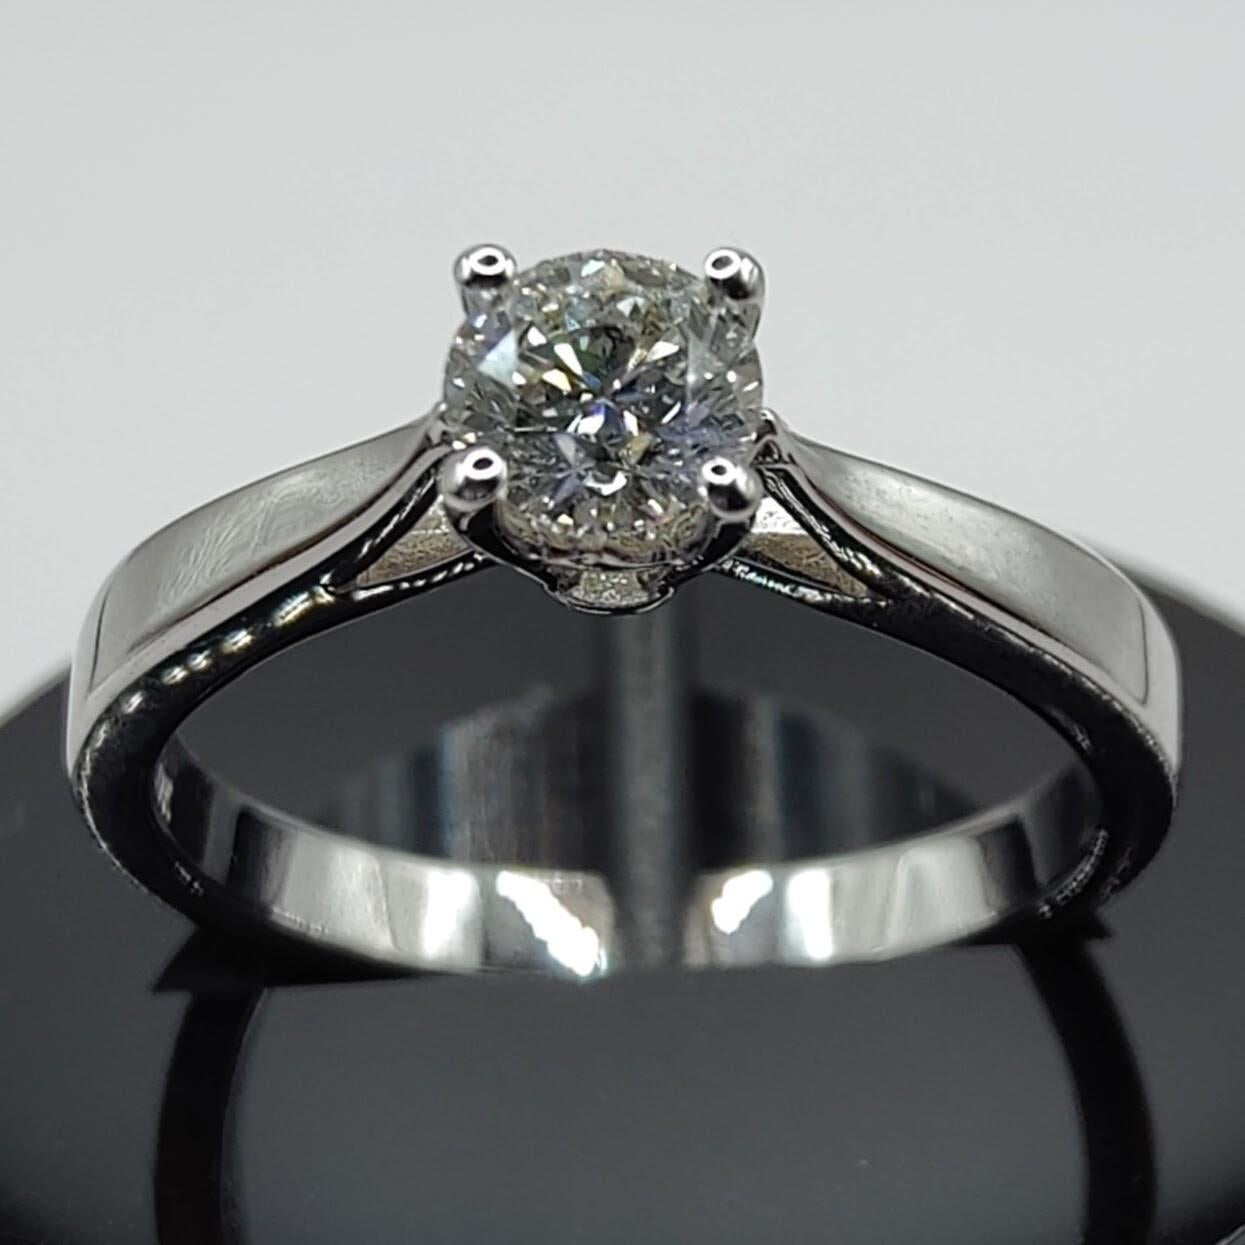 Dieser klassische und doch moderne Solitär-Diamant-Verlobungsring ist die perfekte Wahl für alle, die ein zeitloses und elegantes Schmuckstück suchen. Der Ring ist aus hochwertigem 18-karätigem Weißgold gefertigt und mit einem einzelnen funkelnden